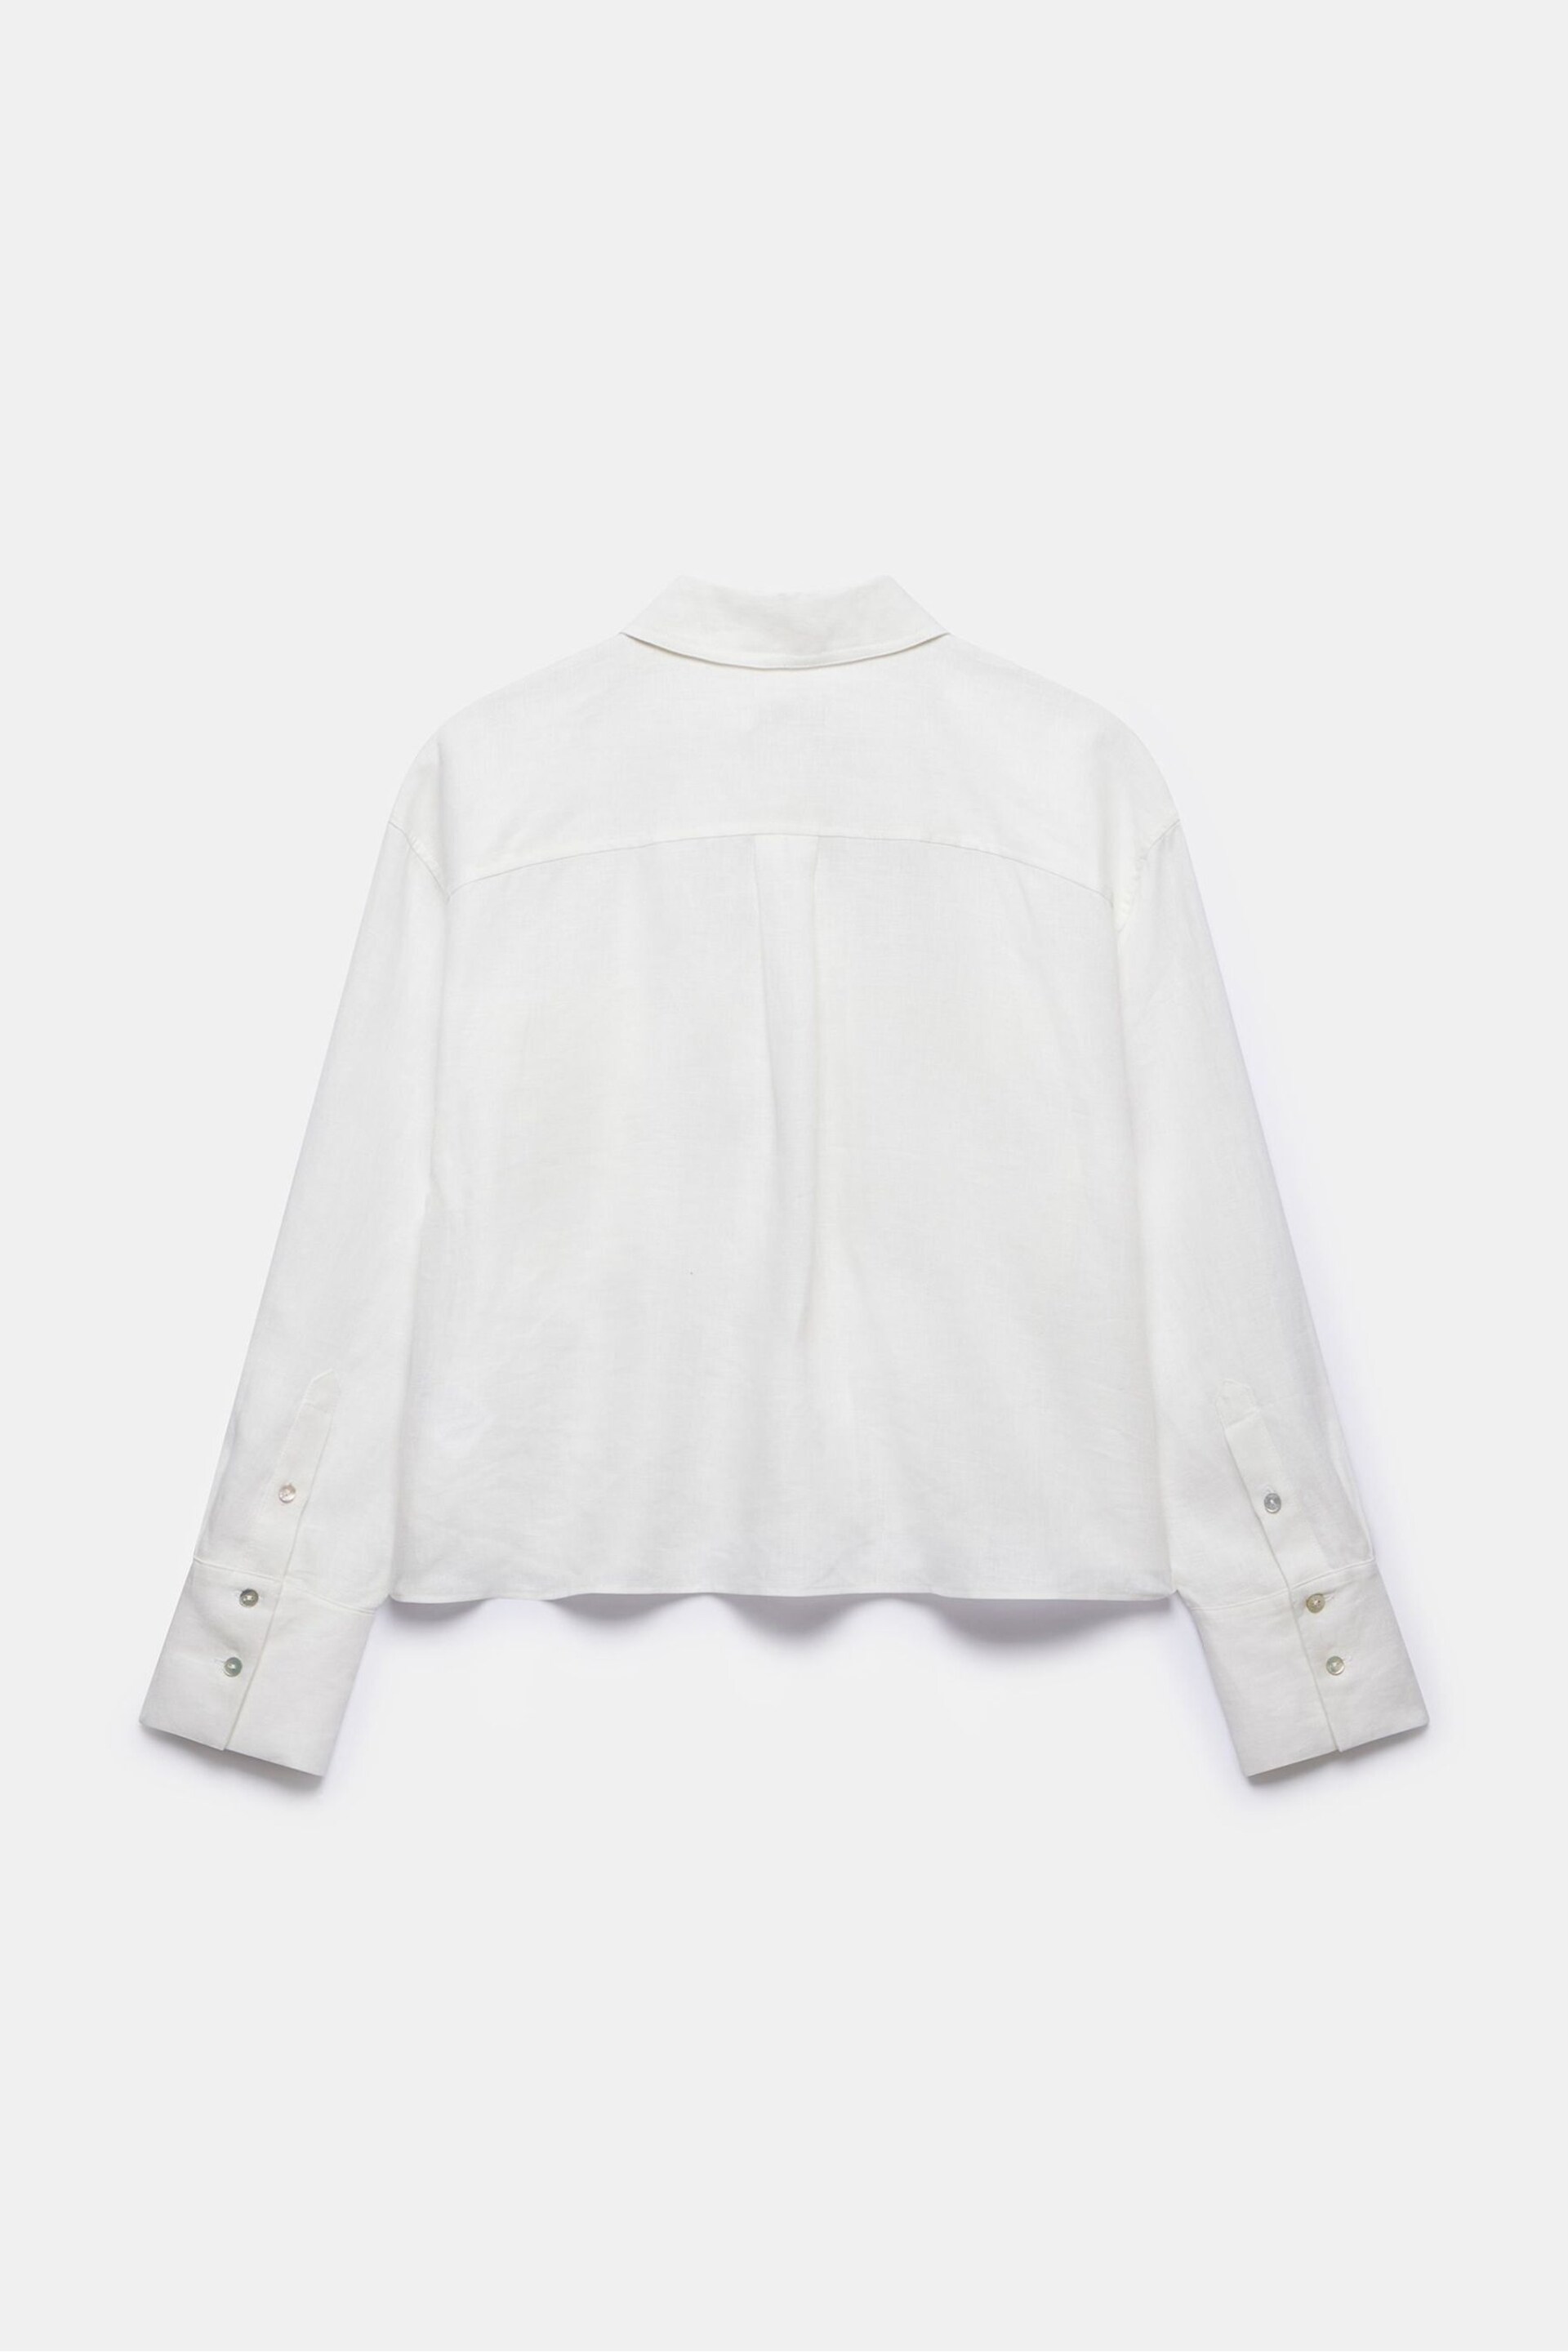 Mint Velvet White Cropped Linen Shirt - Image 4 of 4